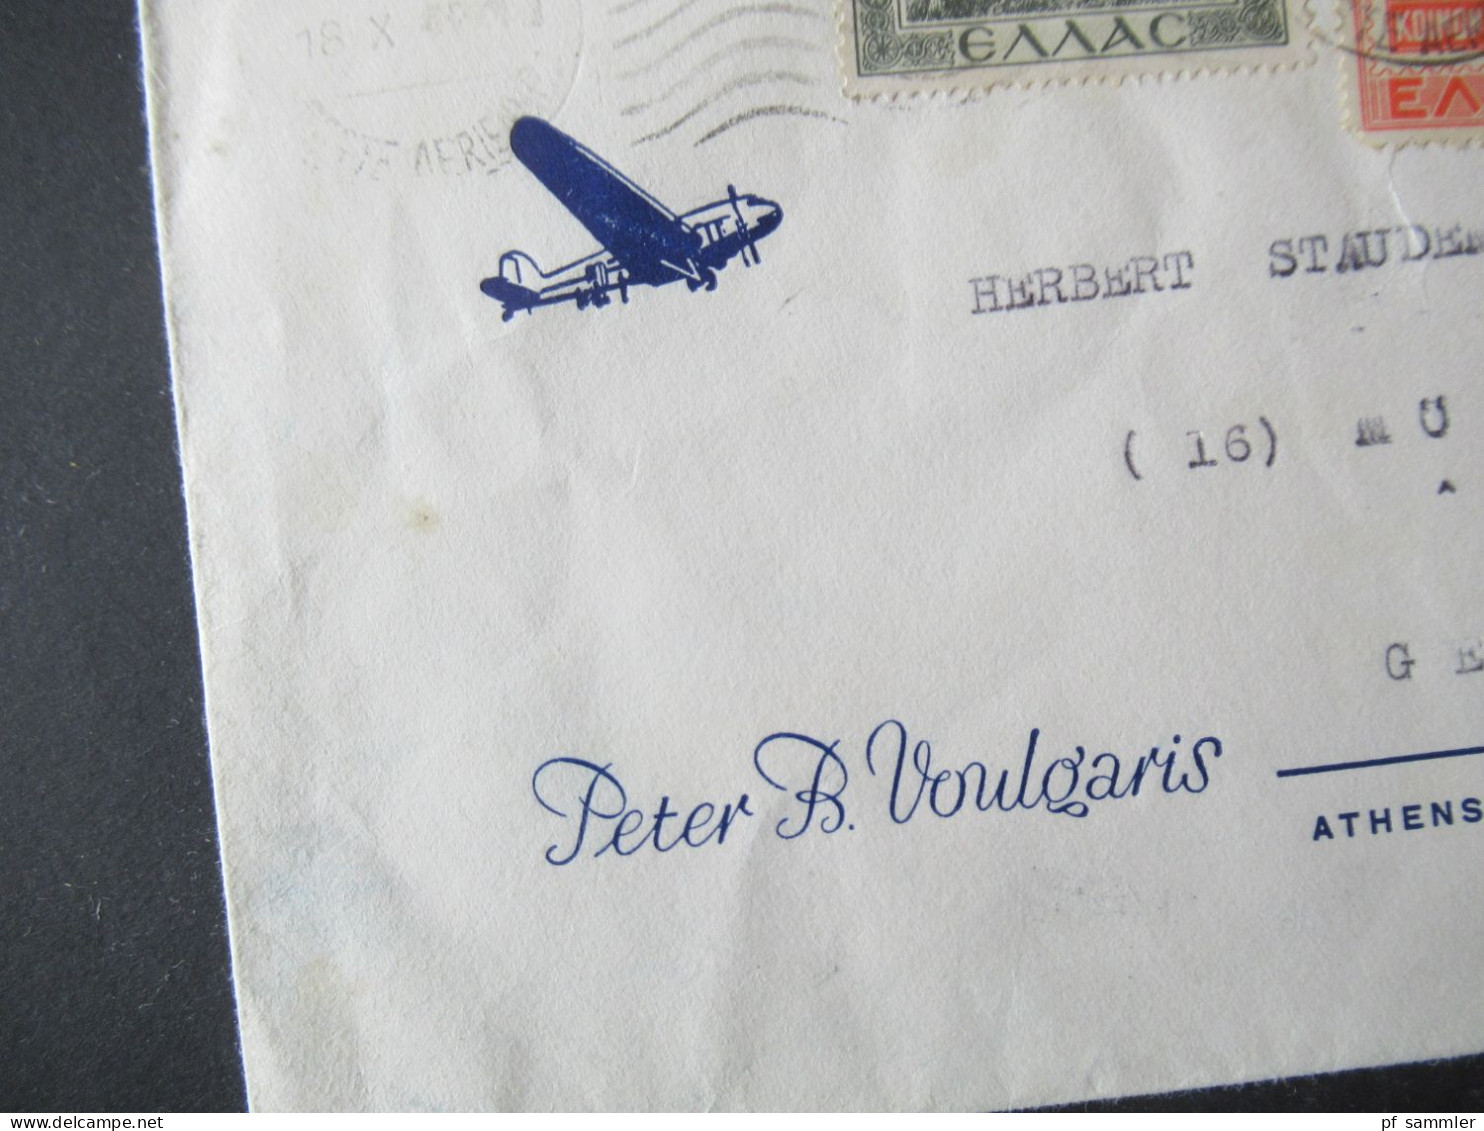 Griechenland 1949 Luftpost Umschlag Mit Flugzeug / Verschlepte Griechische Kinder Mi.Nr.561 MiF Nach Mürfelden Gesendet - Briefe U. Dokumente